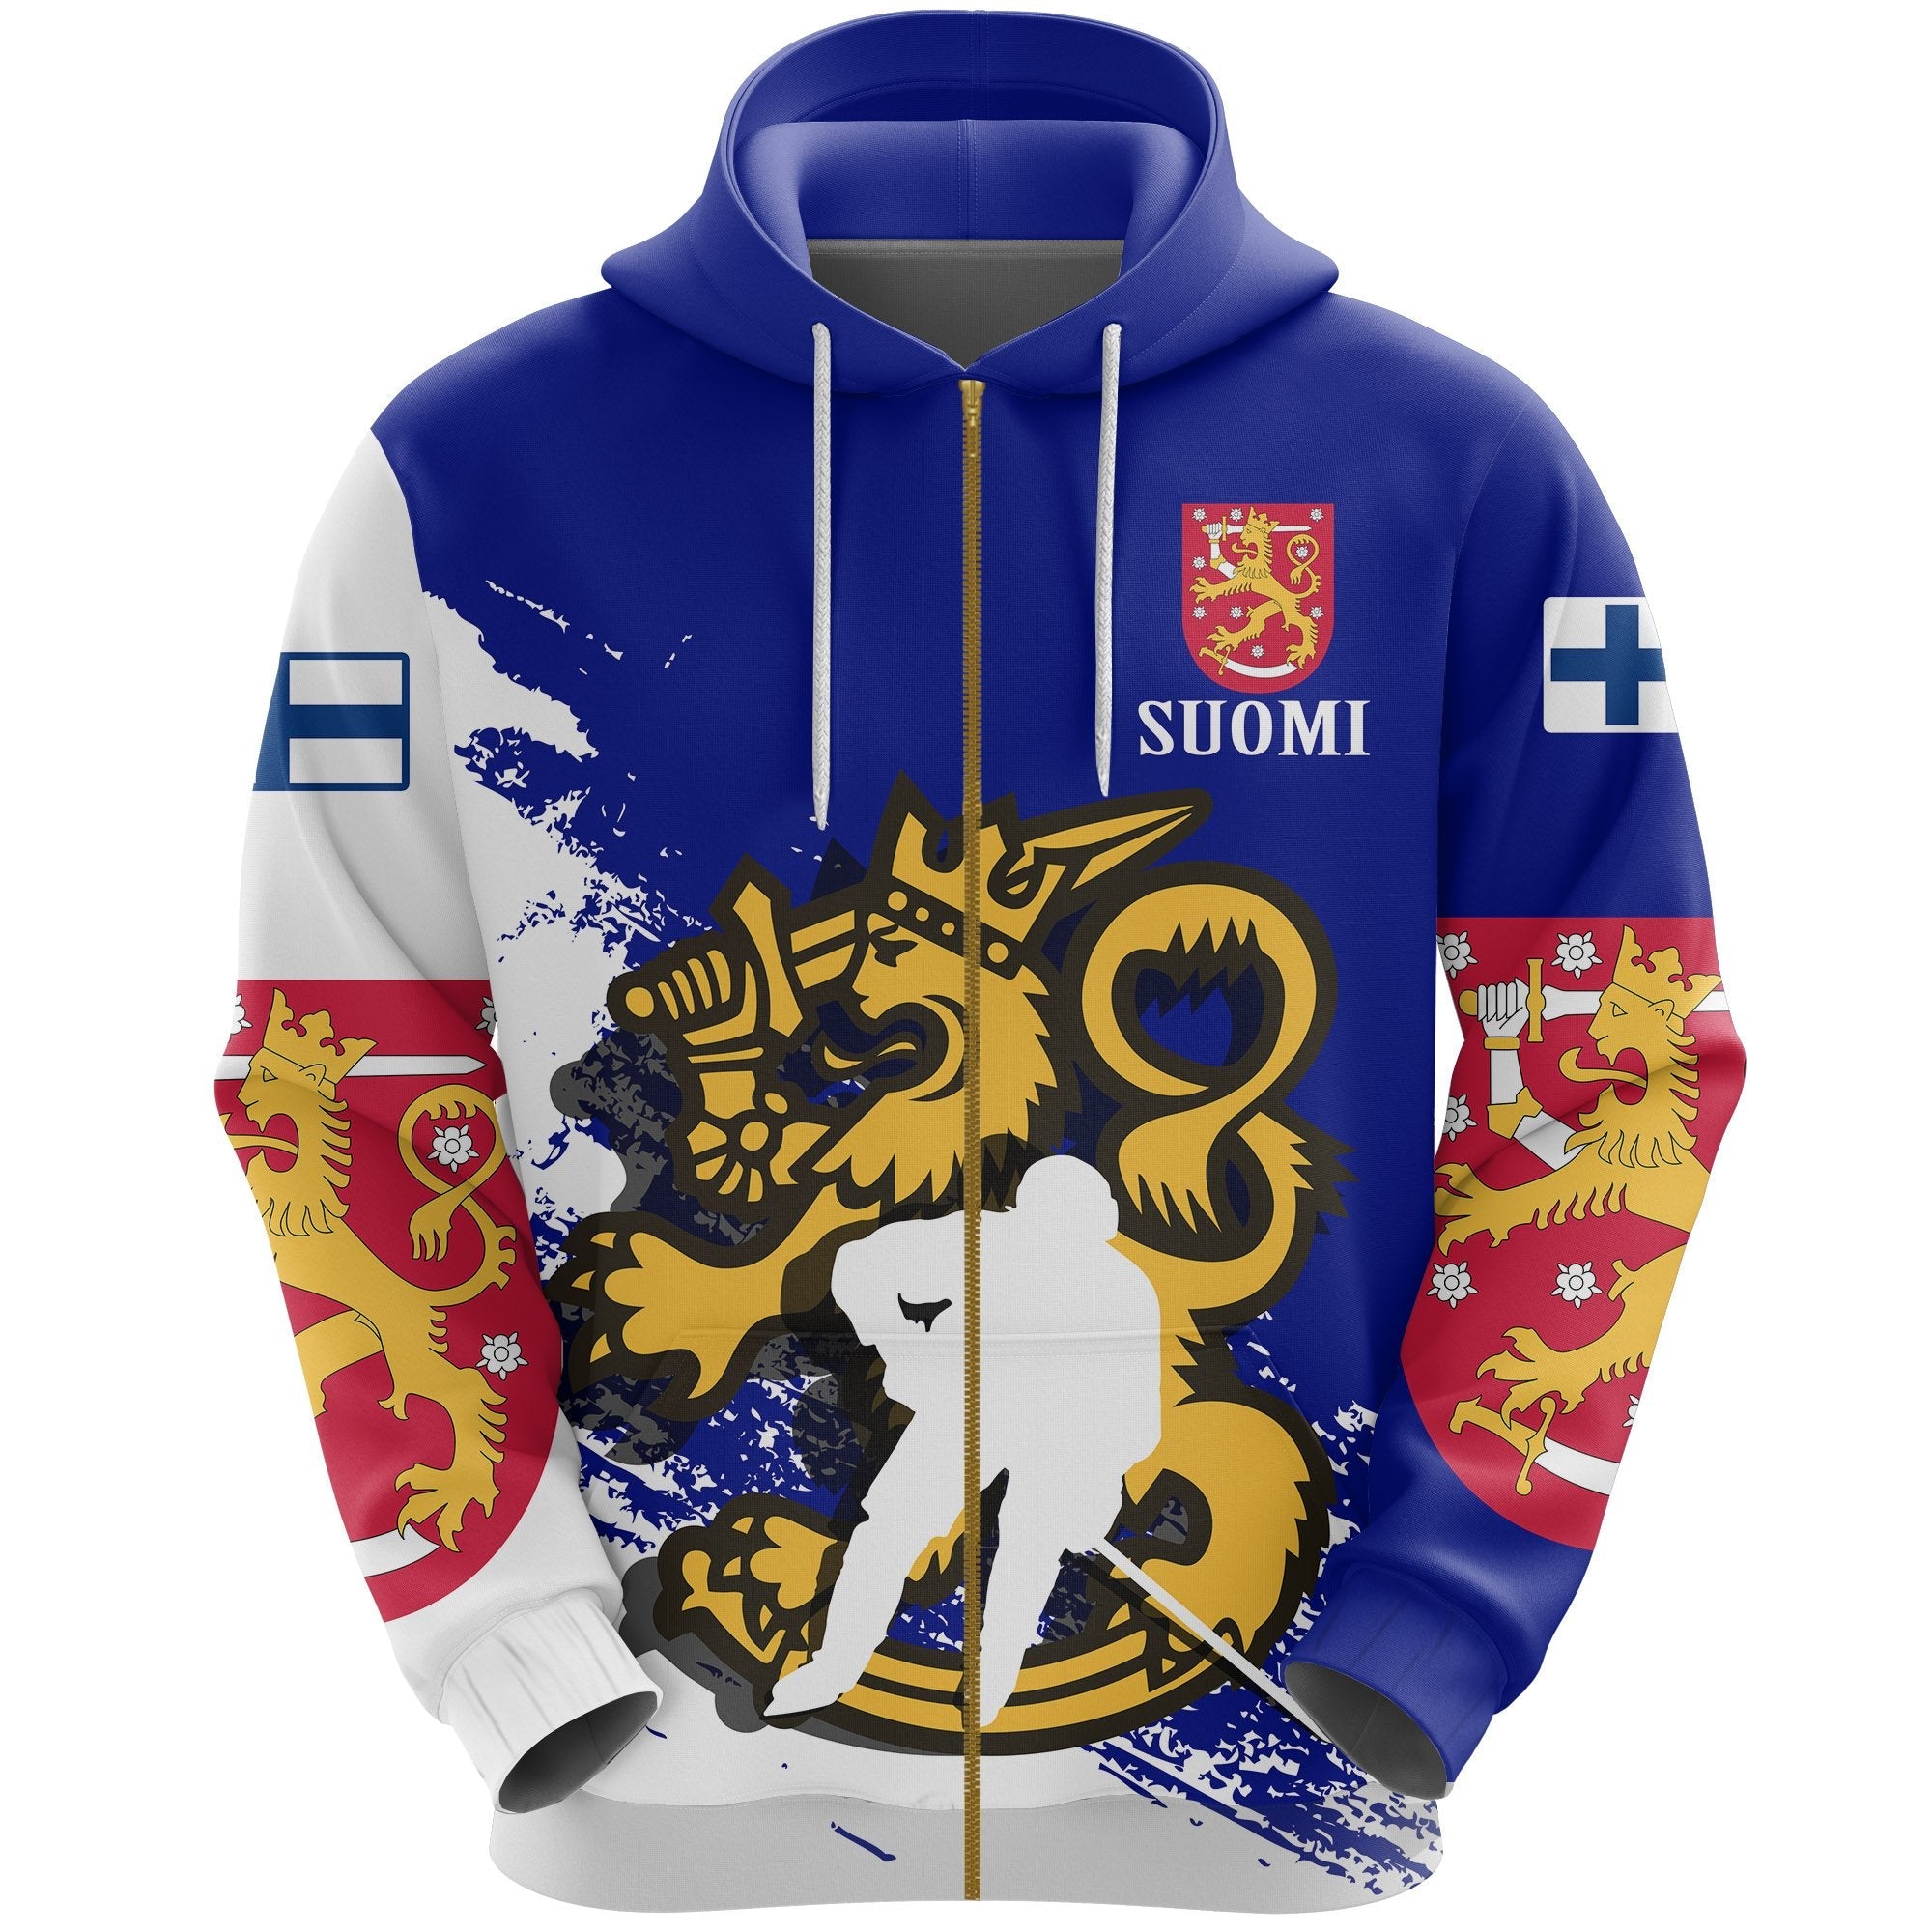 suomi-finland-hockey-zip-hoodie